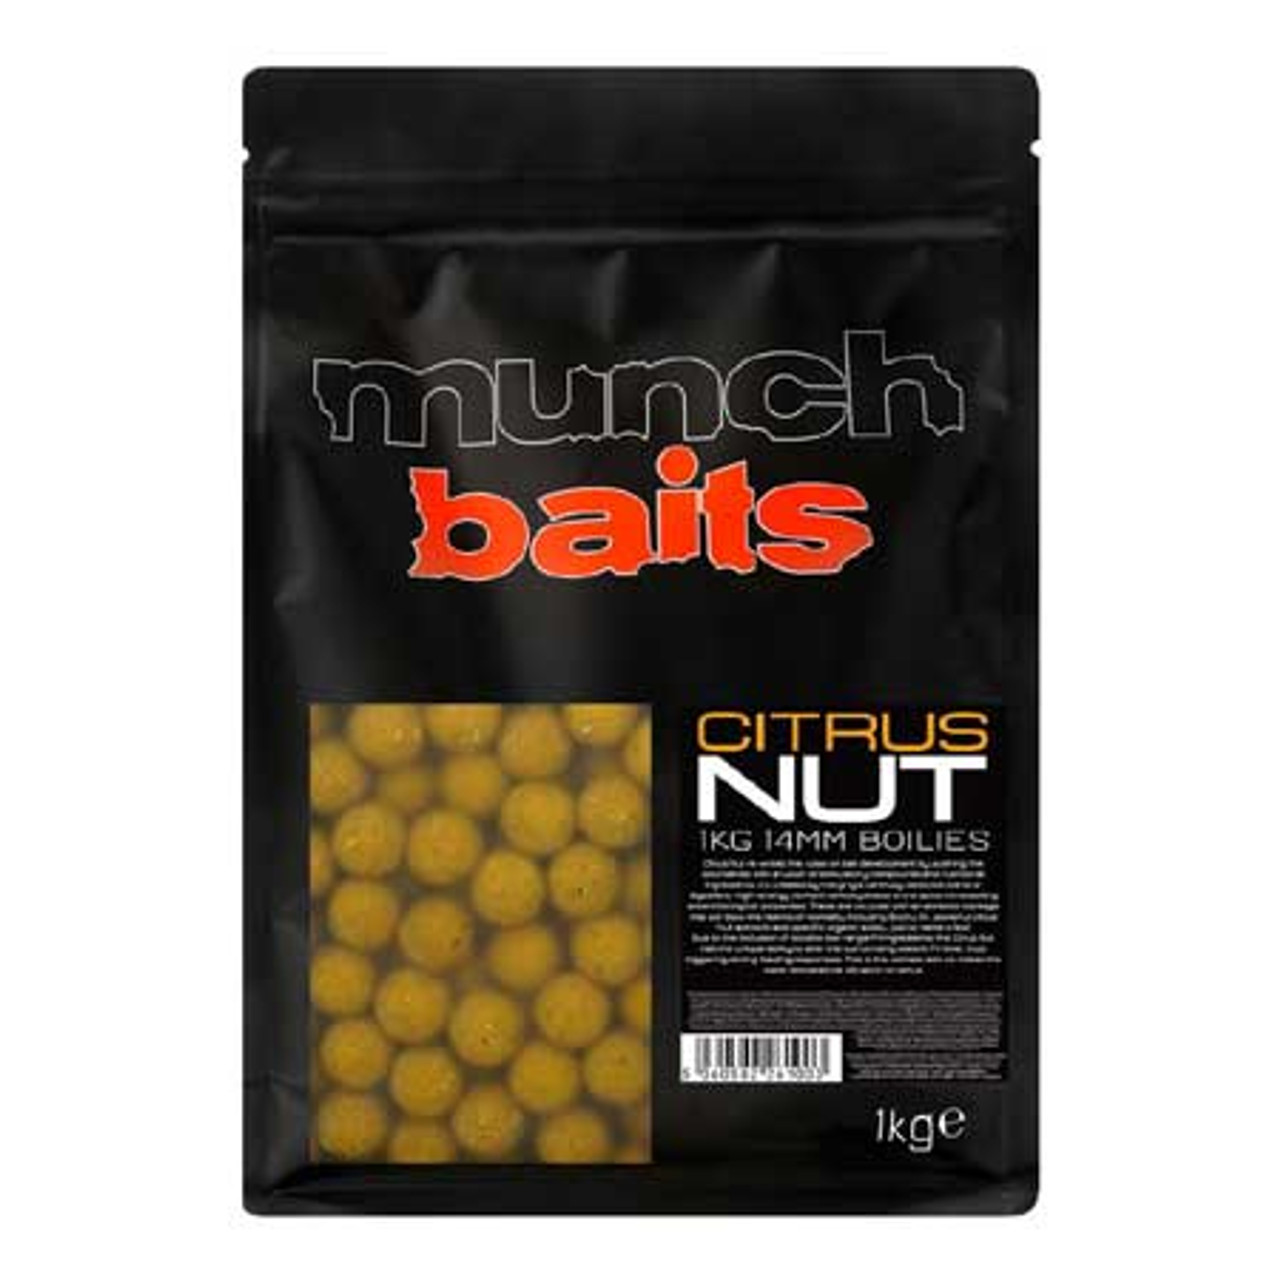 Munch Baits Citrus Nut Boilies 1Kg